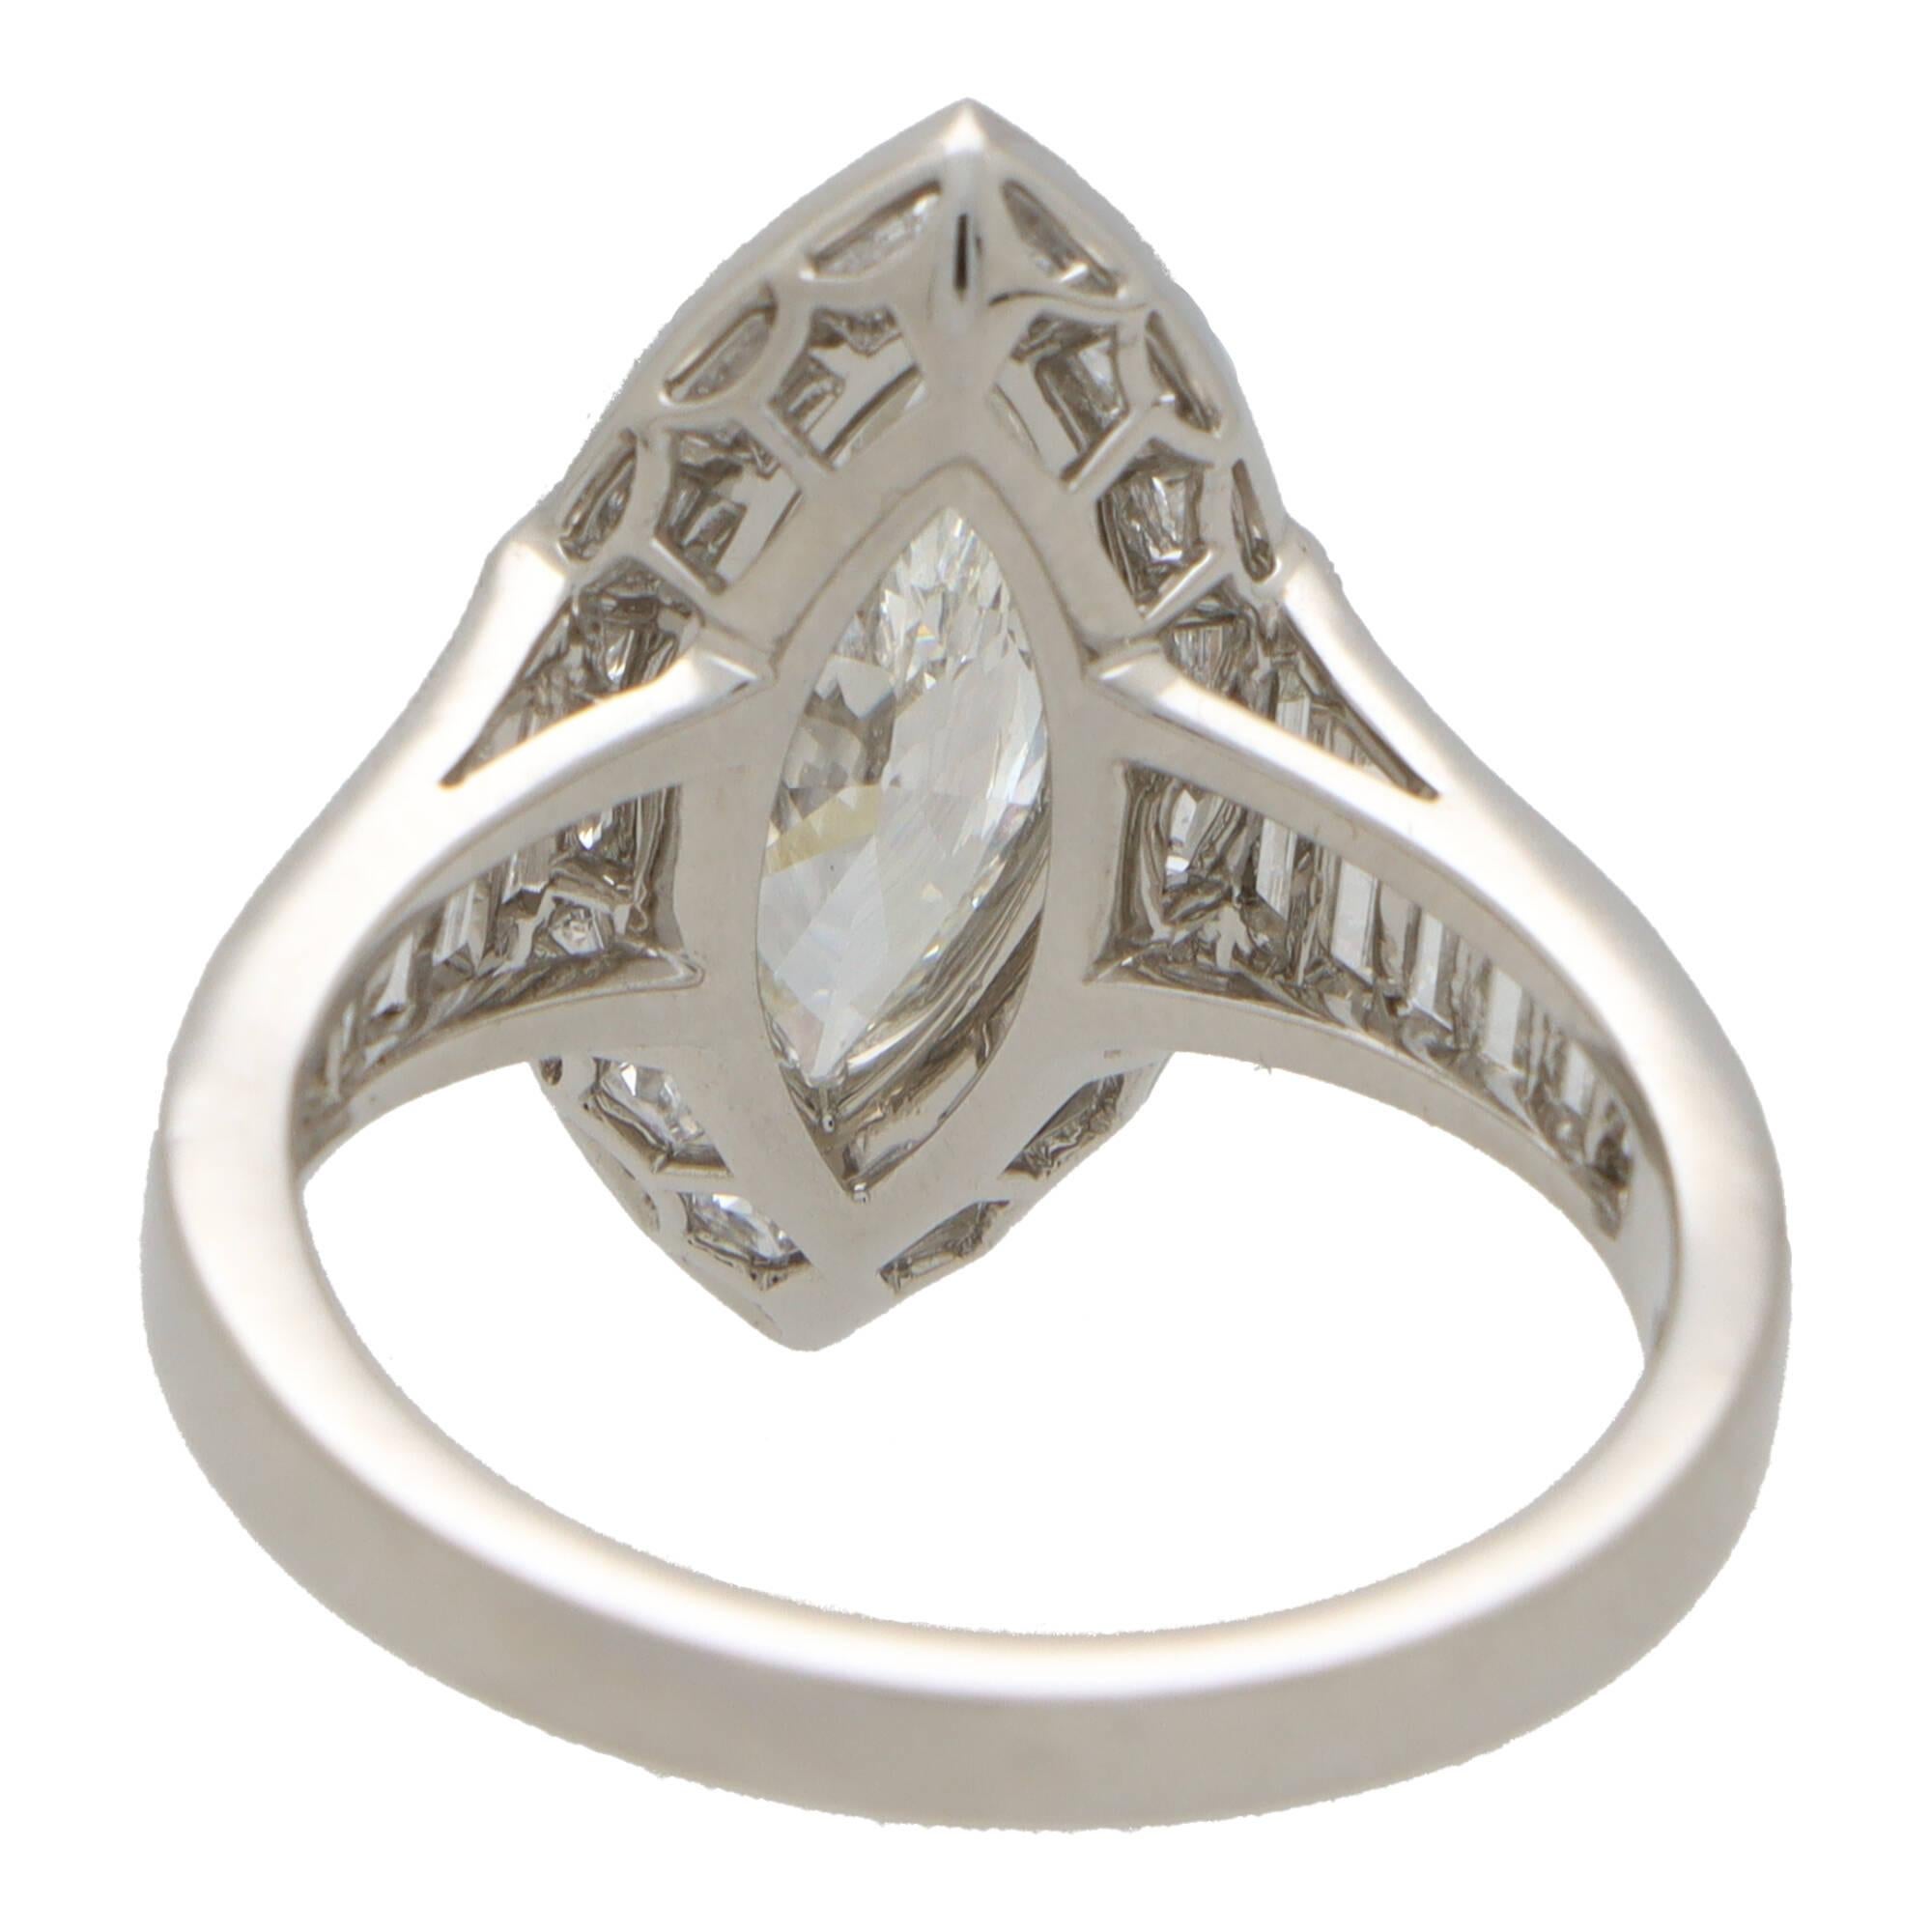 Art Deco inspirierter Diamant-Halo-Ring aus Platin mit Marquise-Schliff  für Damen oder Herren